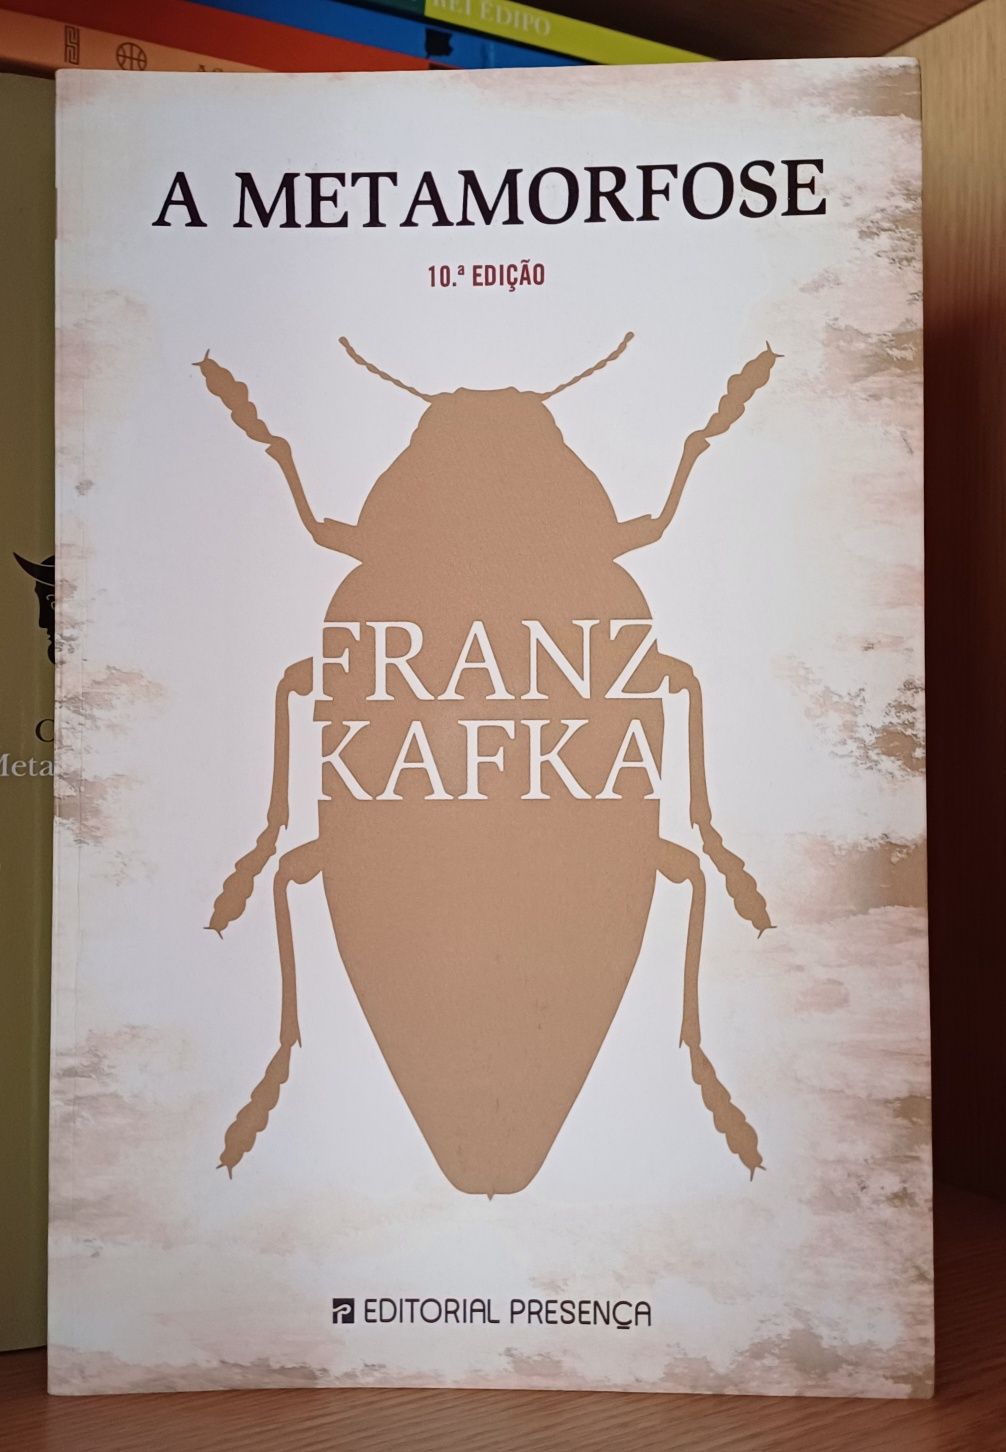 Livro "A Metamorfose", de Franz Kafka